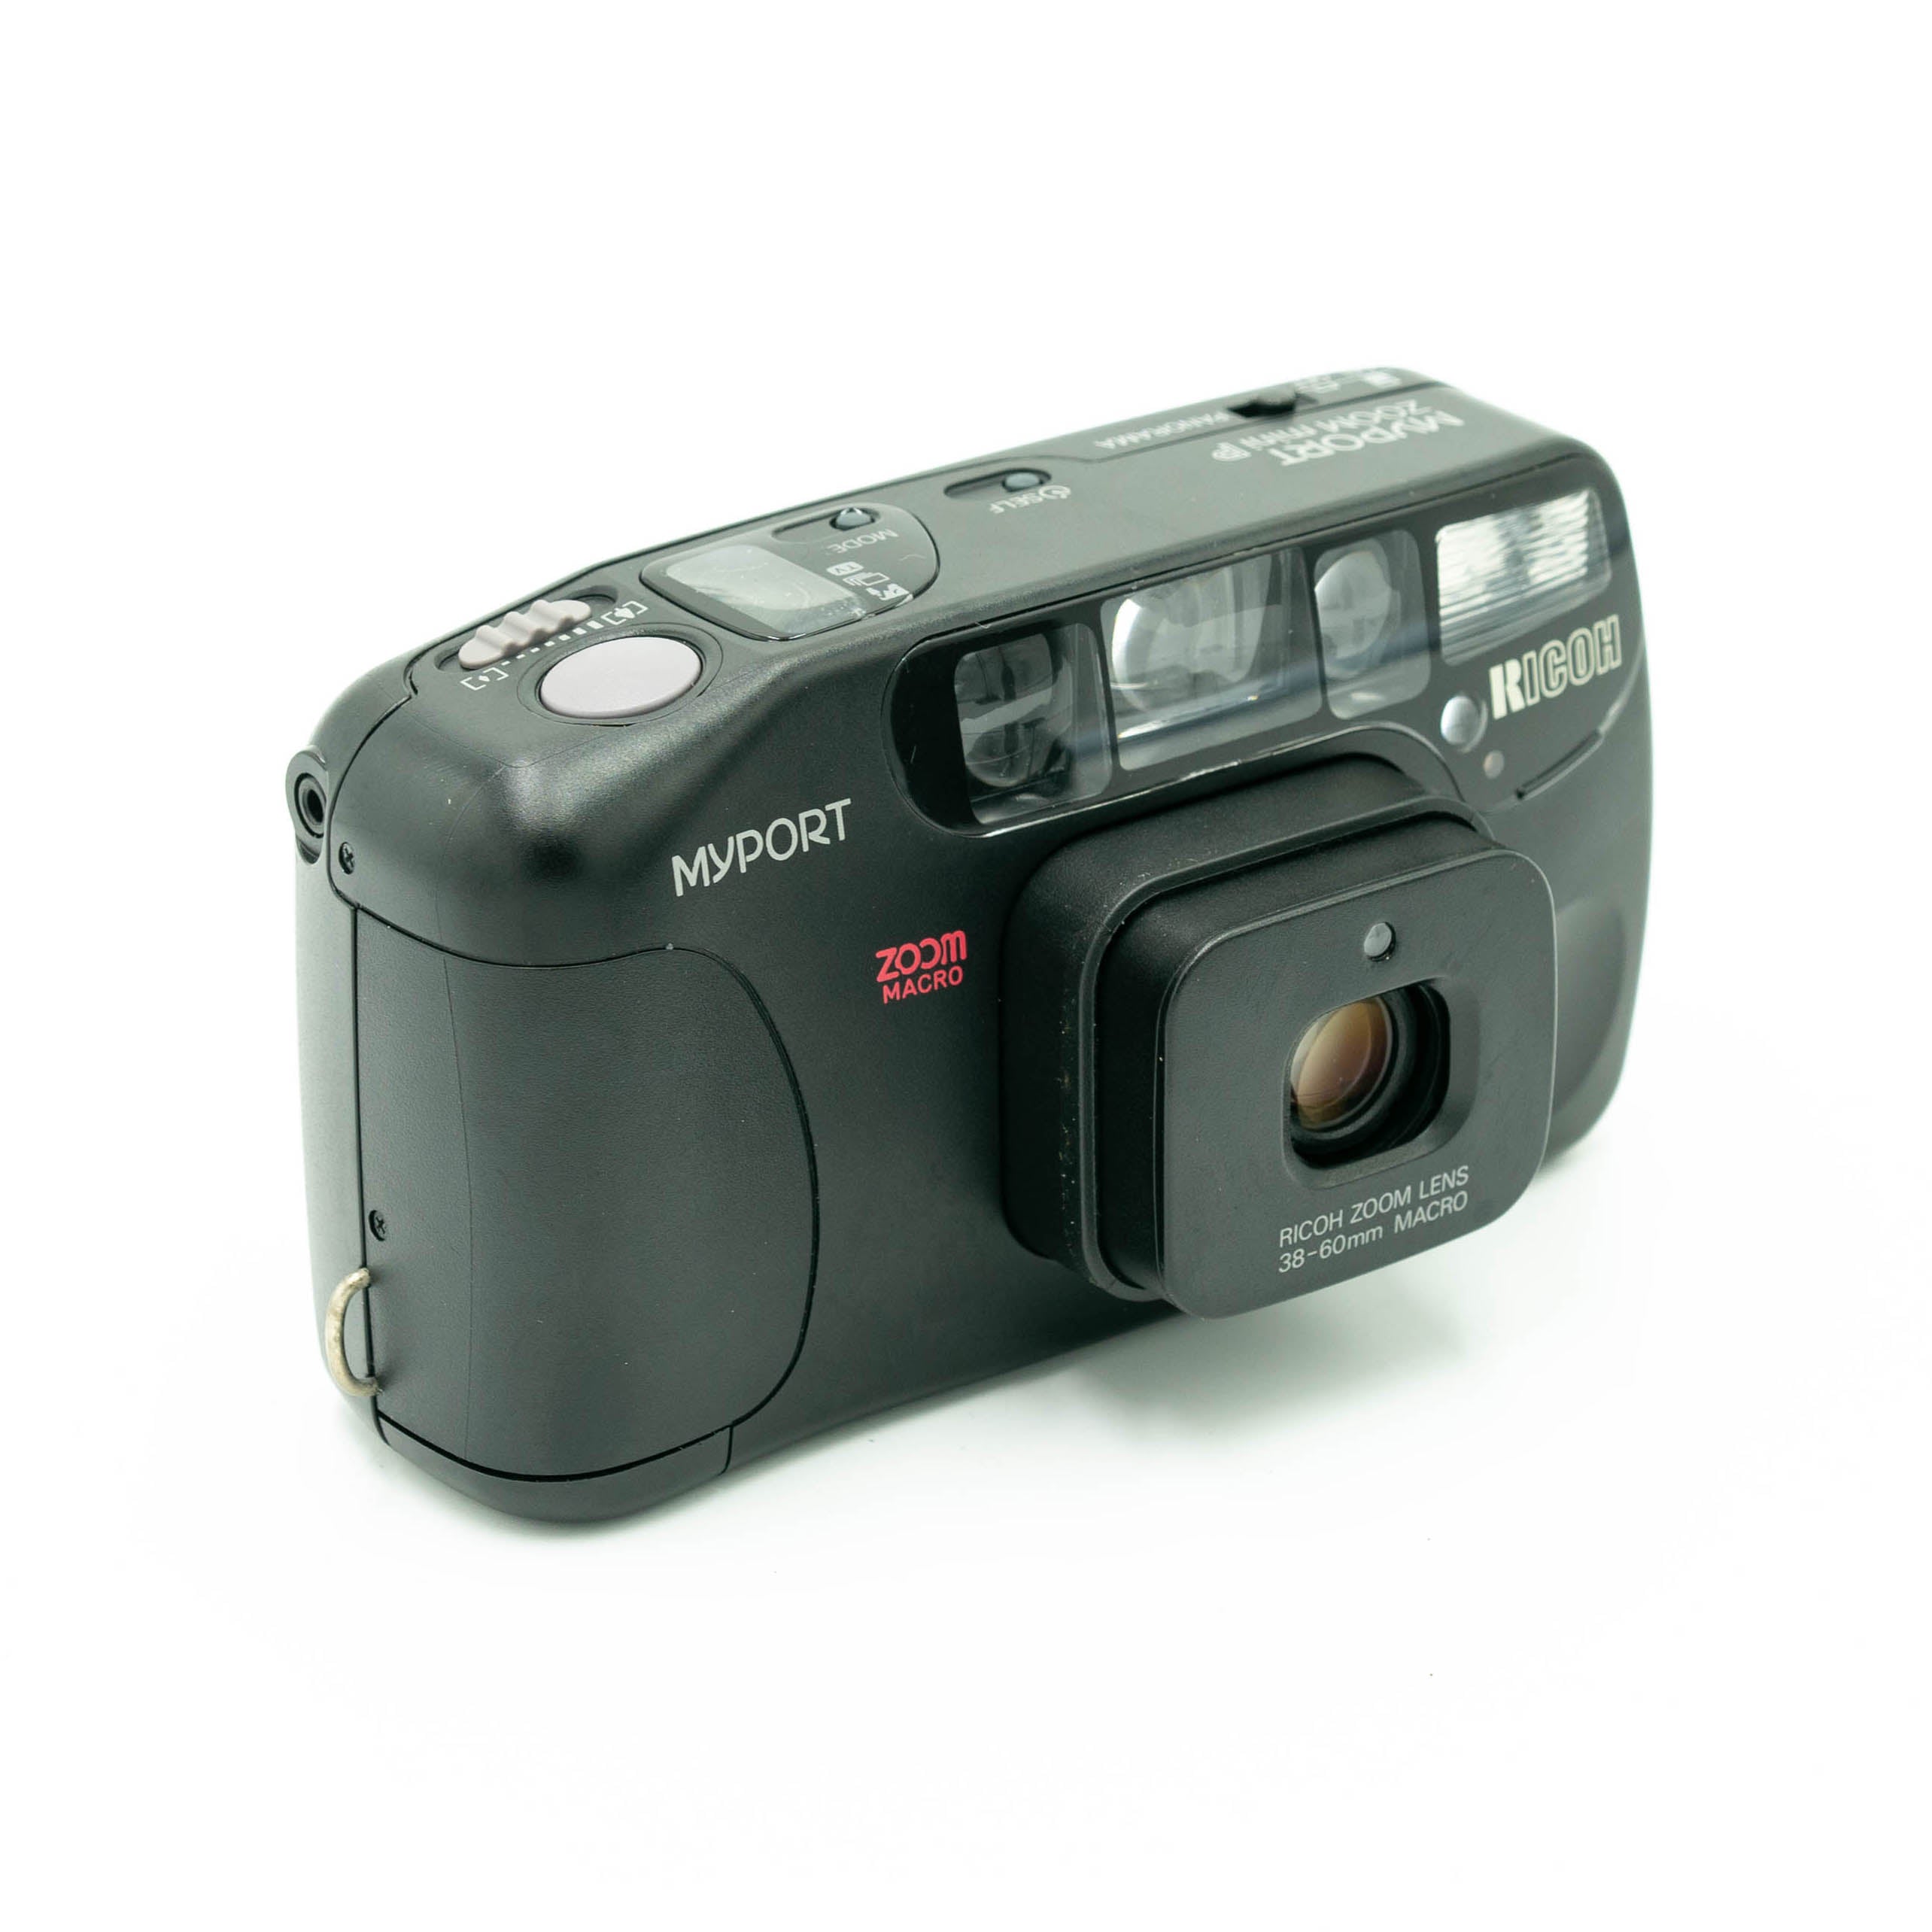 フィルムカメラ RICOH MyPORT ZOOM mini P - フィルムカメラ